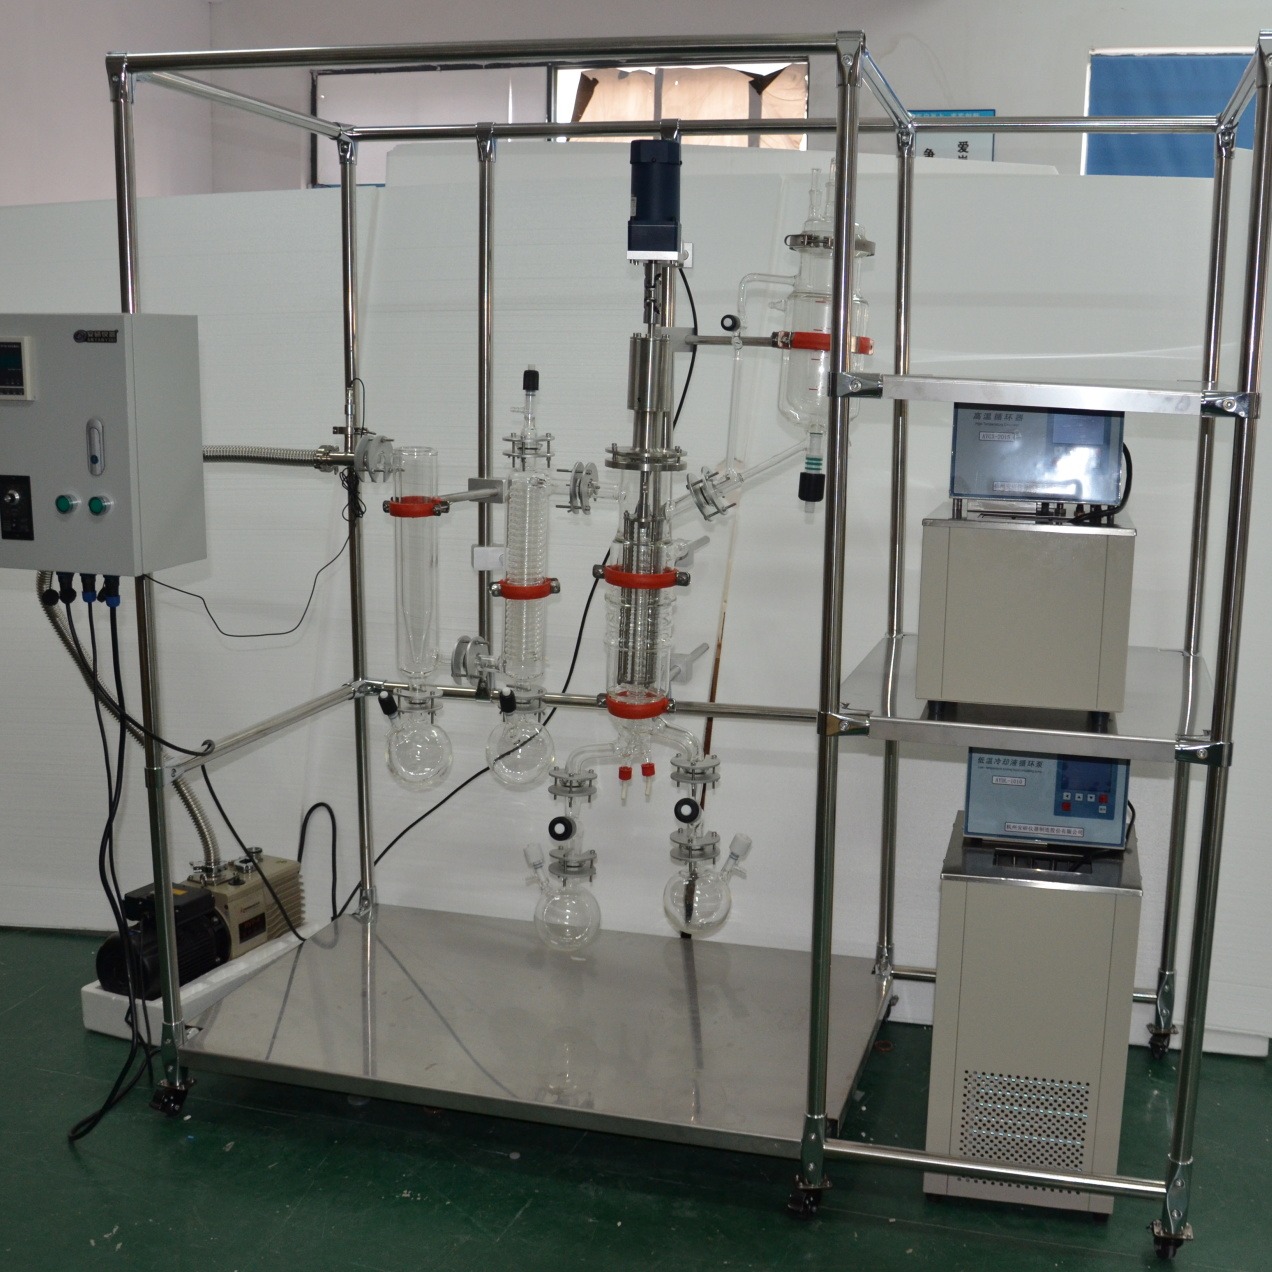 短程分子蒸馏设备 不锈钢分子蒸馏装置 分子蒸馏实验室装置 AYAN-F80 杭州安研 采用溶剂萃取后液体的脱溶非常有效图片